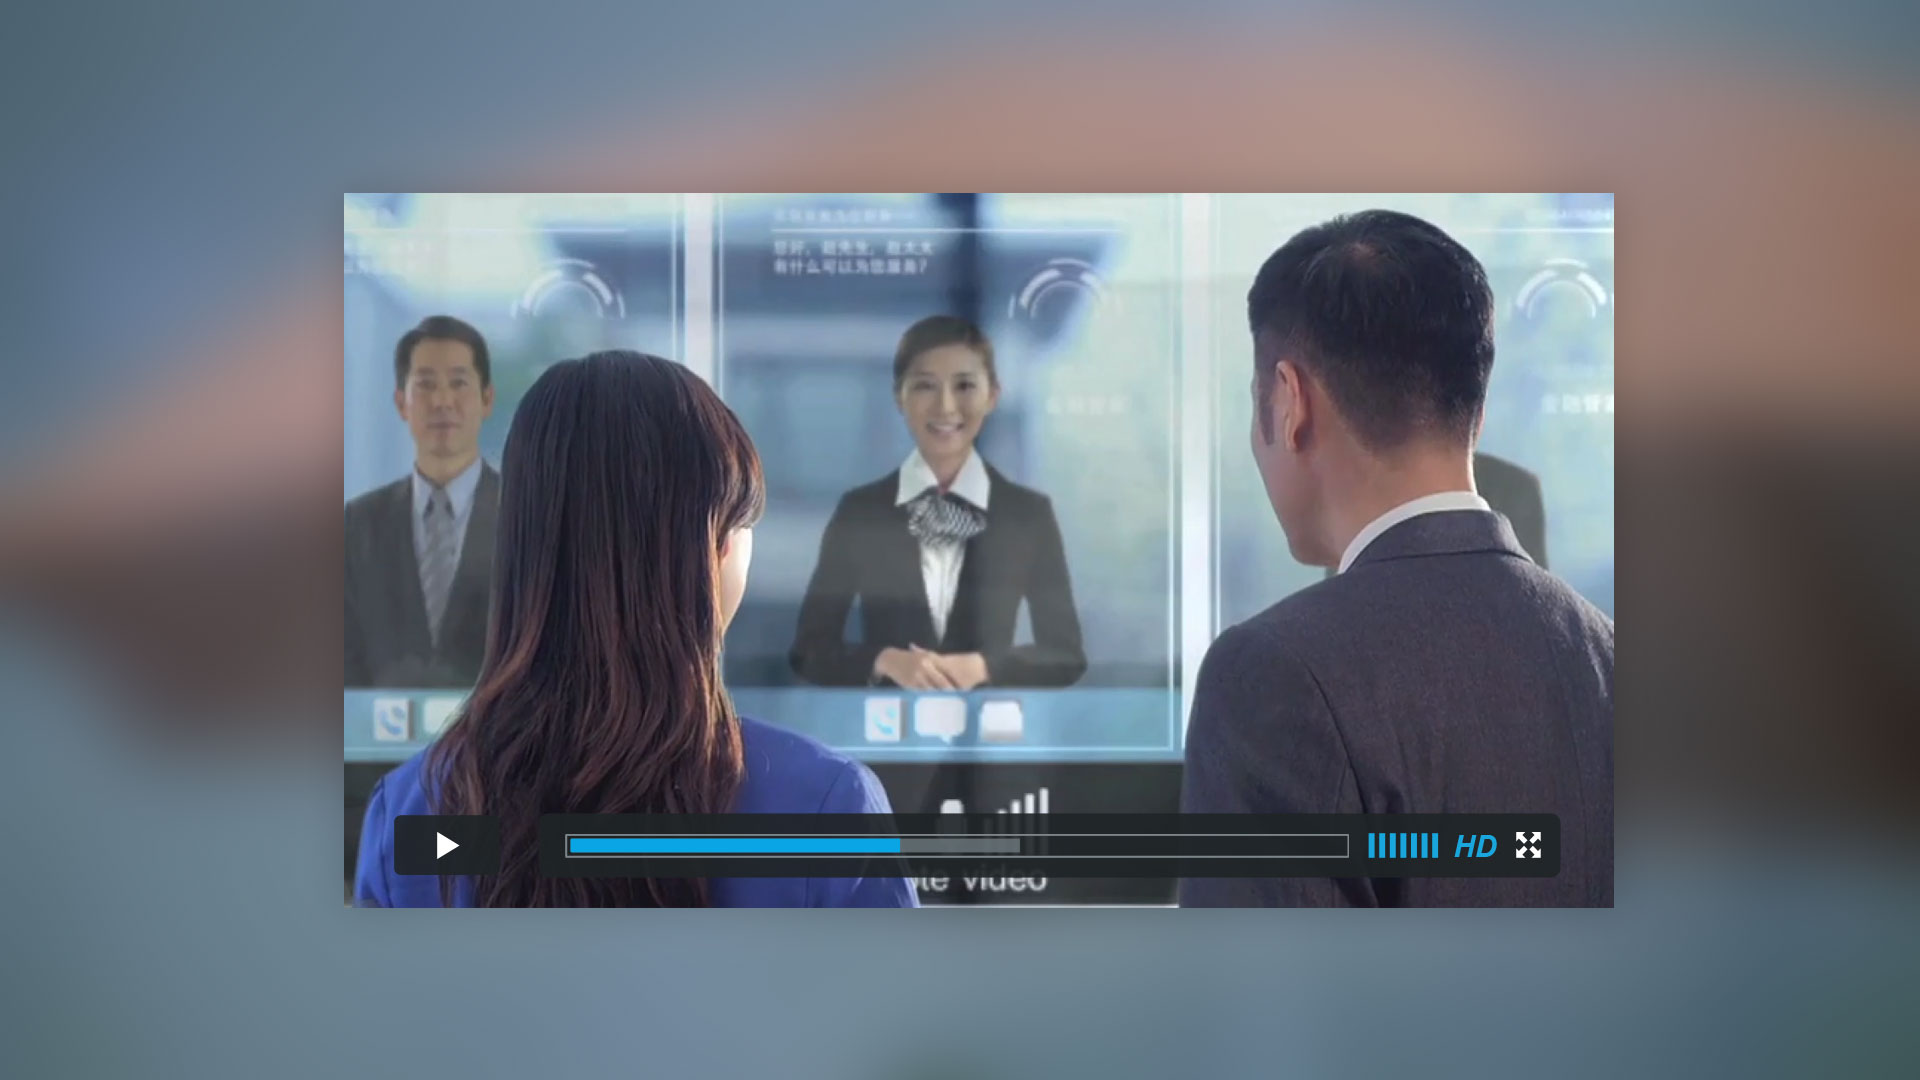 中国农业银行未来银行品牌宣传片